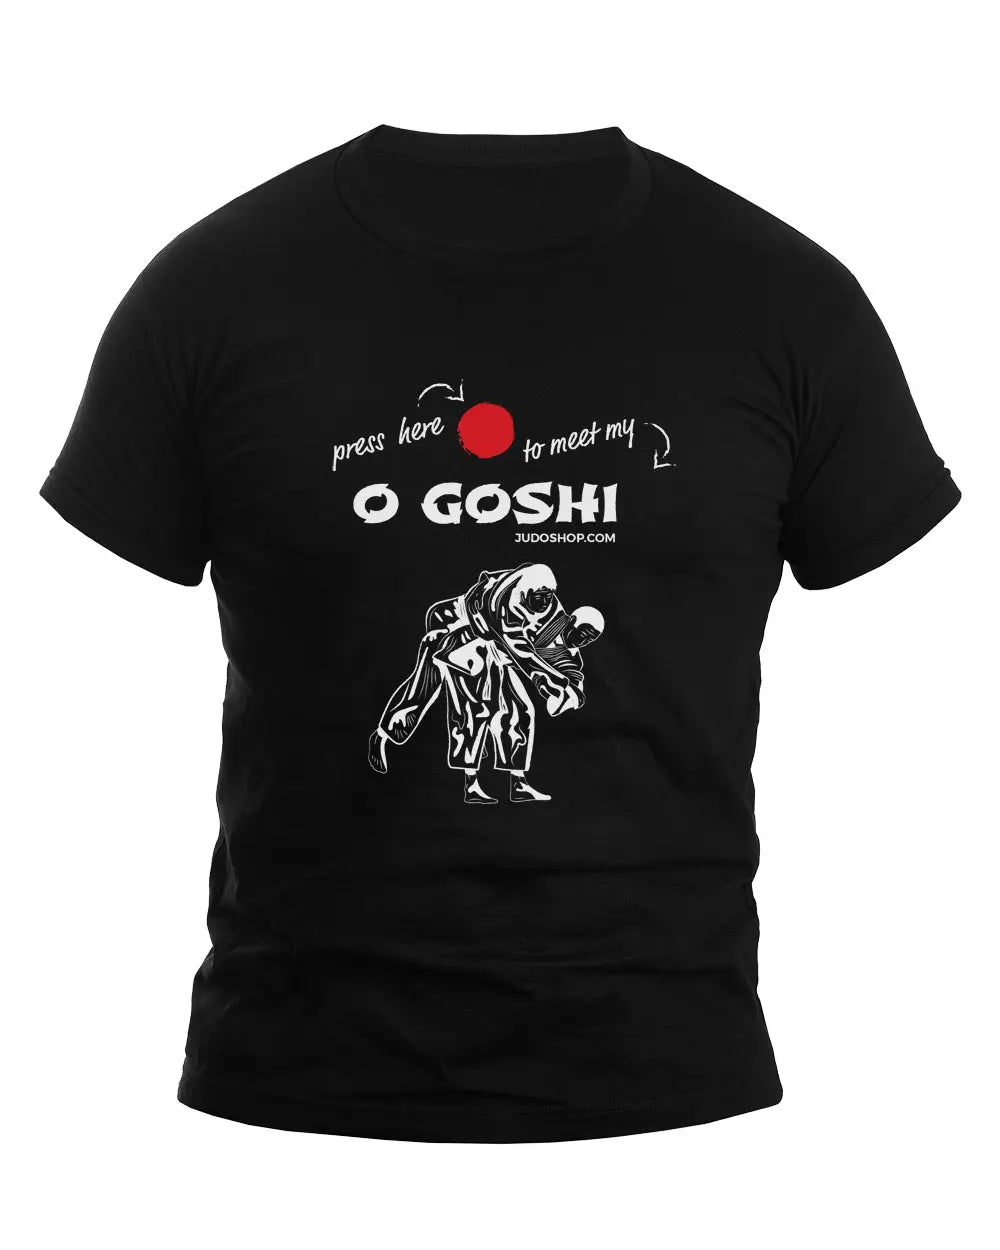 Judo T-Shirt O Goshi Press Here - JudoShop.com